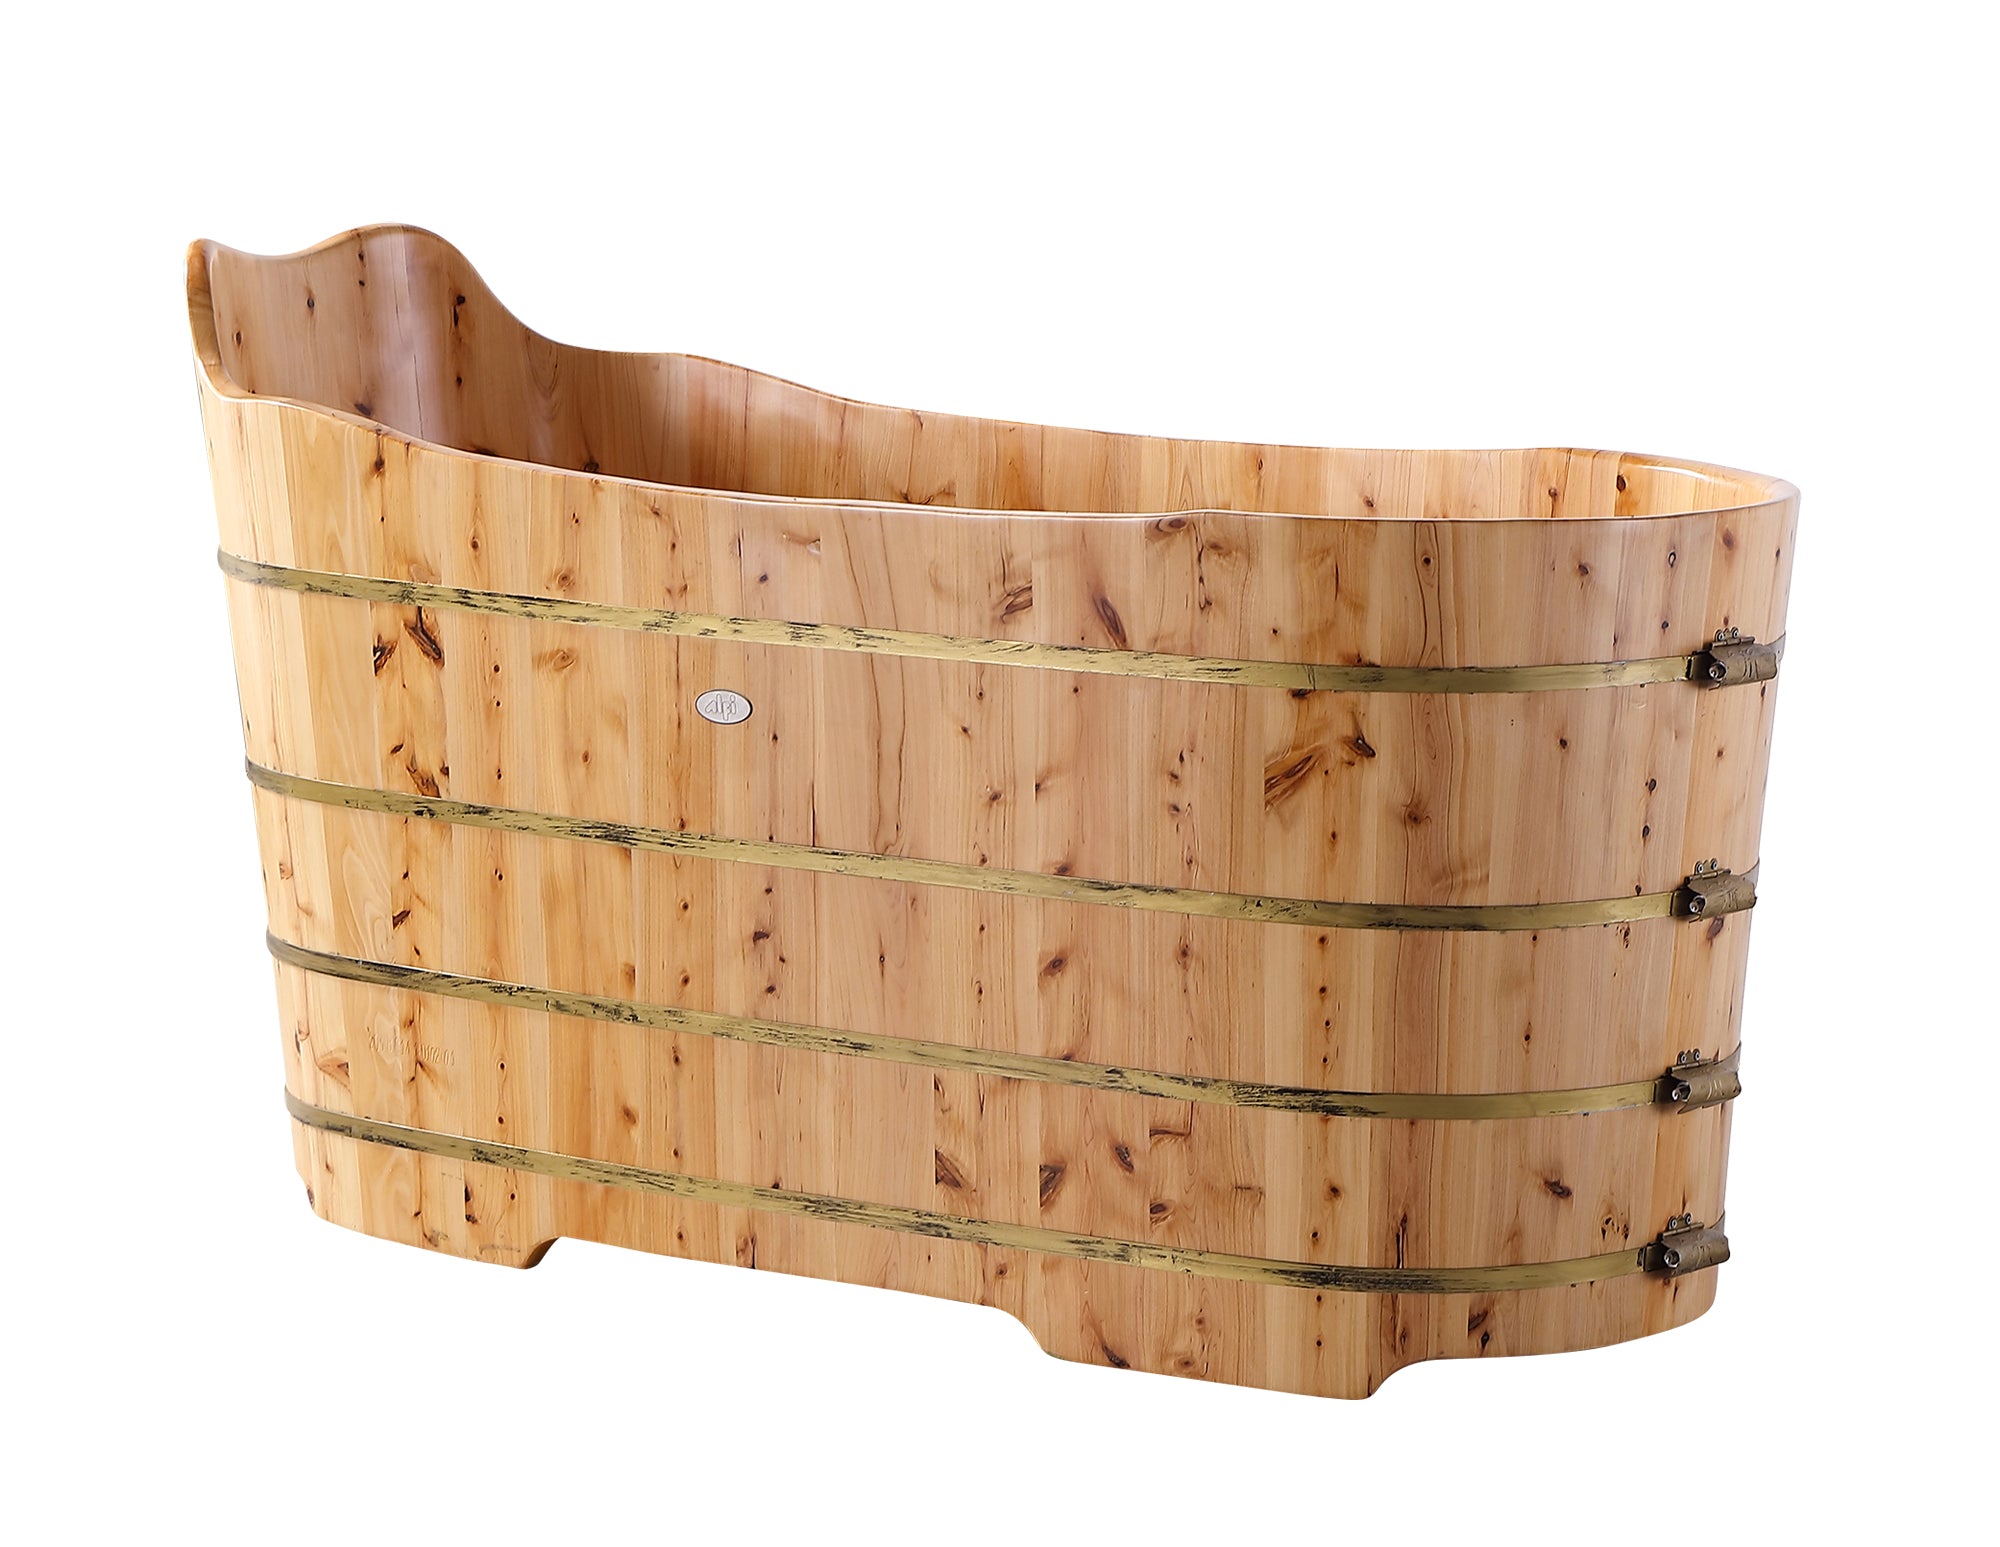 ALFI AB1103 Bathtub Free Standing Cedar Wood with Bench (59-inch)